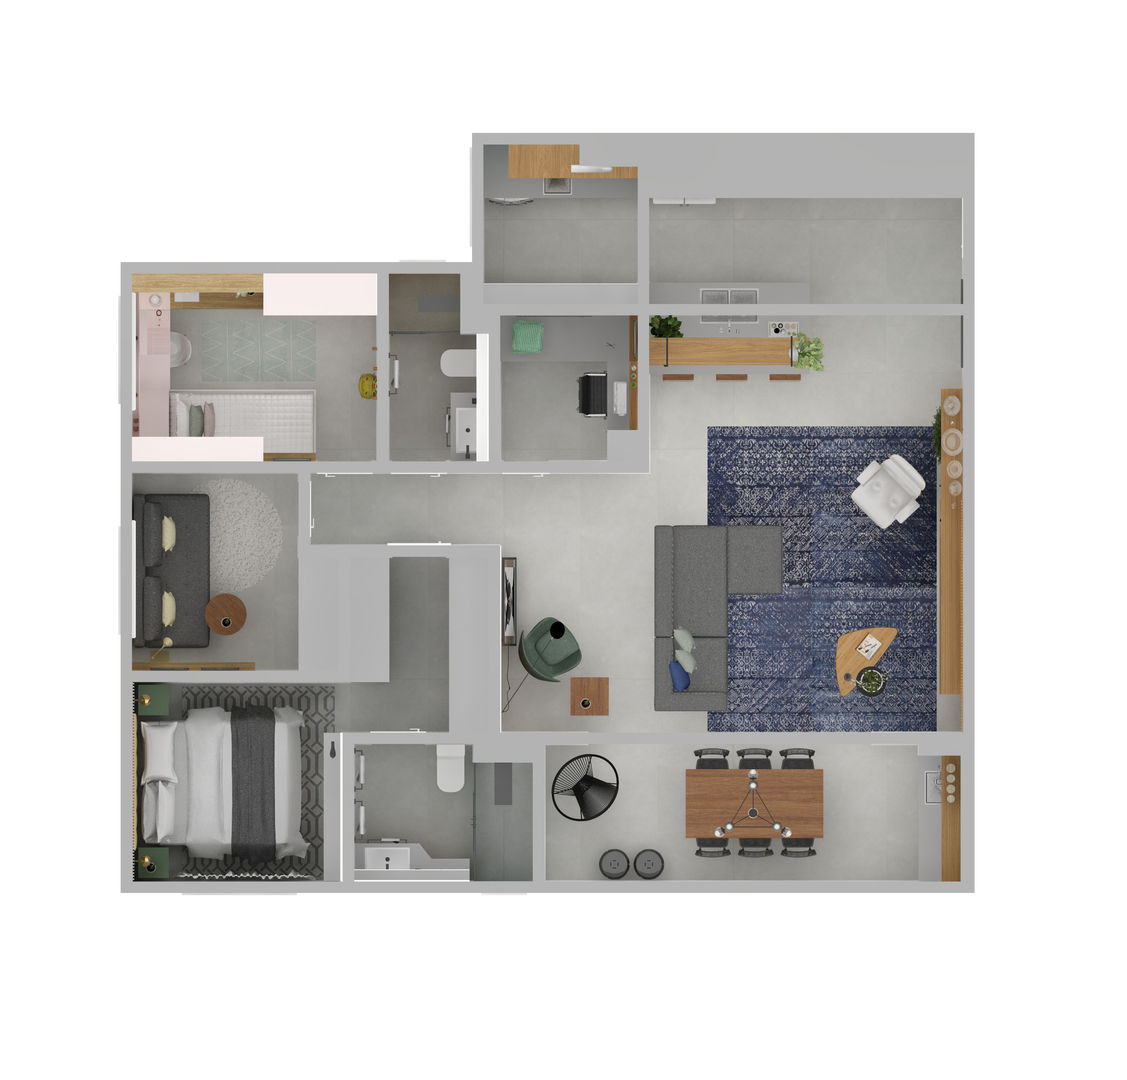 Integração Total - Varanda | Sala | Cozinha | Lavanderia, ArquitetureSe - Projetos de Arquitetura e Interiores à distância ArquitetureSe - Projetos de Arquitetura e Interiores à distância Living room Concrete